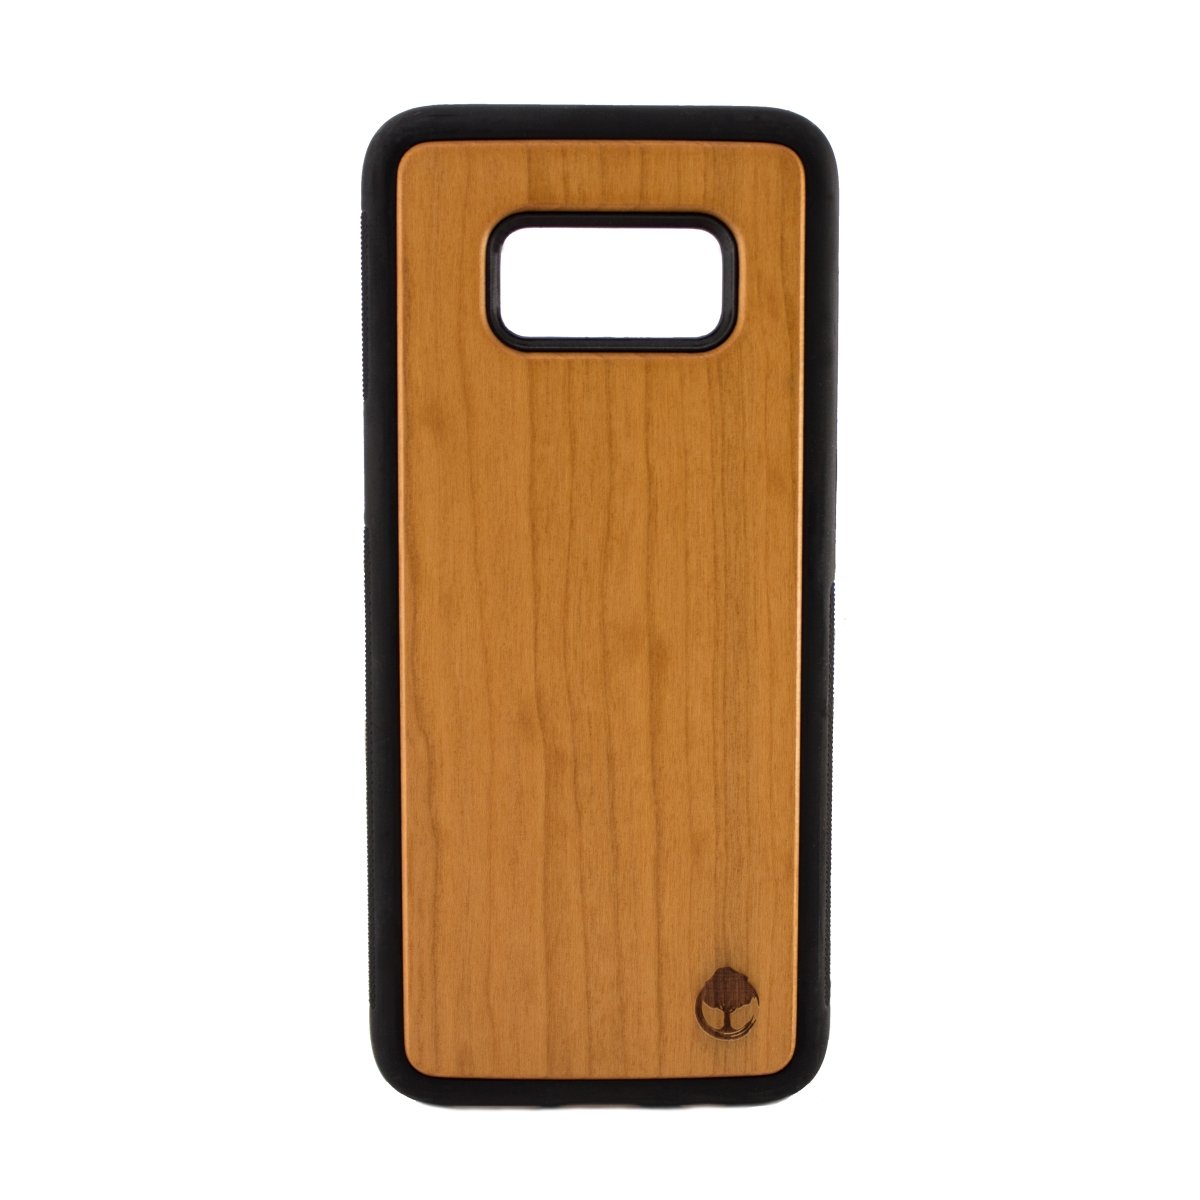 Samsung S8 Wooden Case